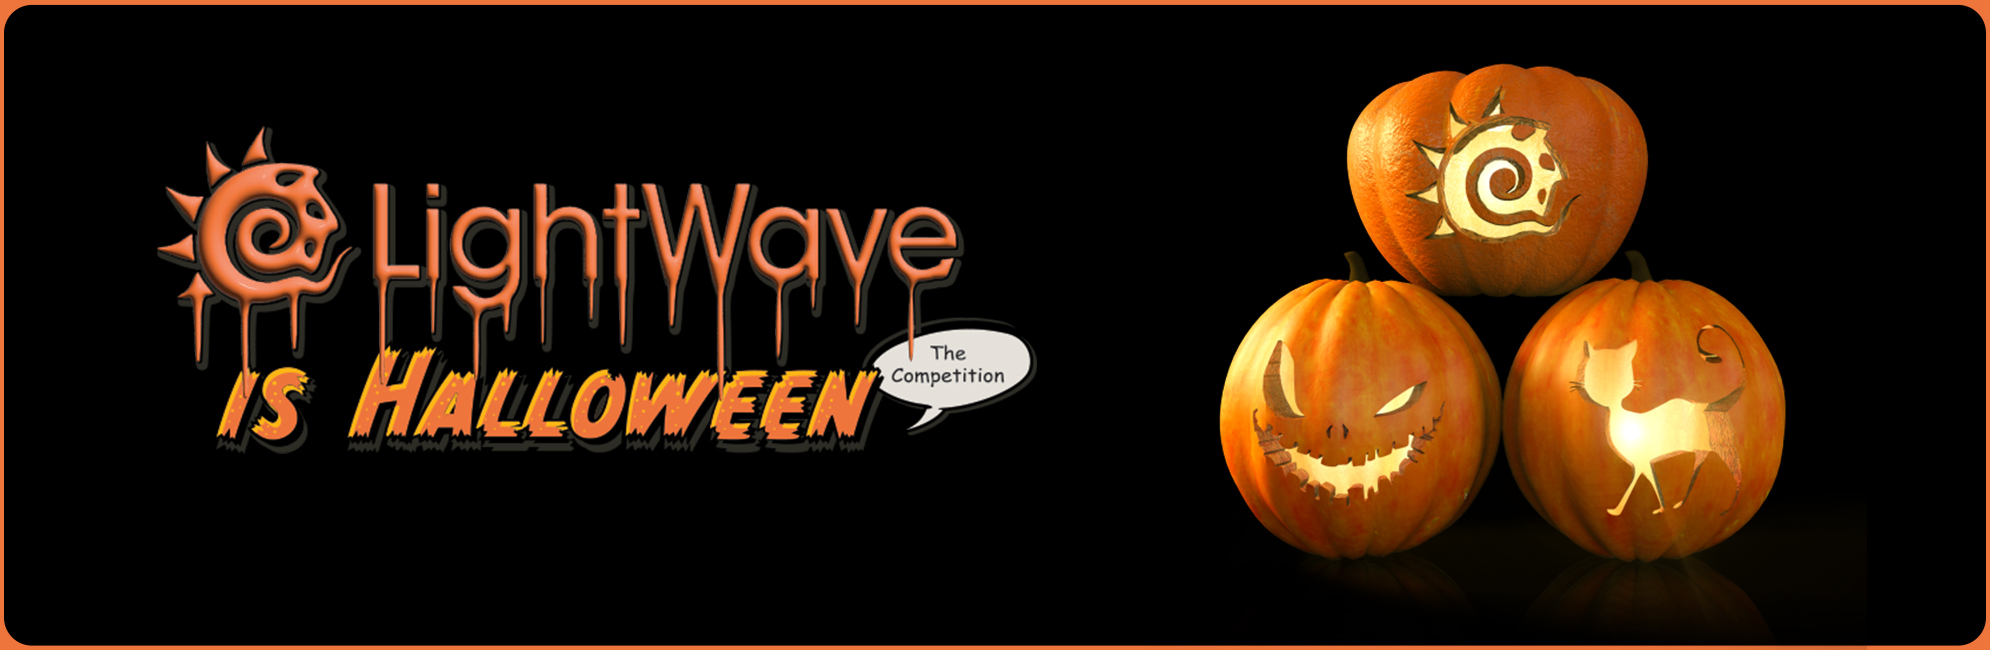 Nome: LightWave is Halloween  LightWave 3D Promo 20320918.jpg
Visite: 140
Dimensione: 387.4 KB